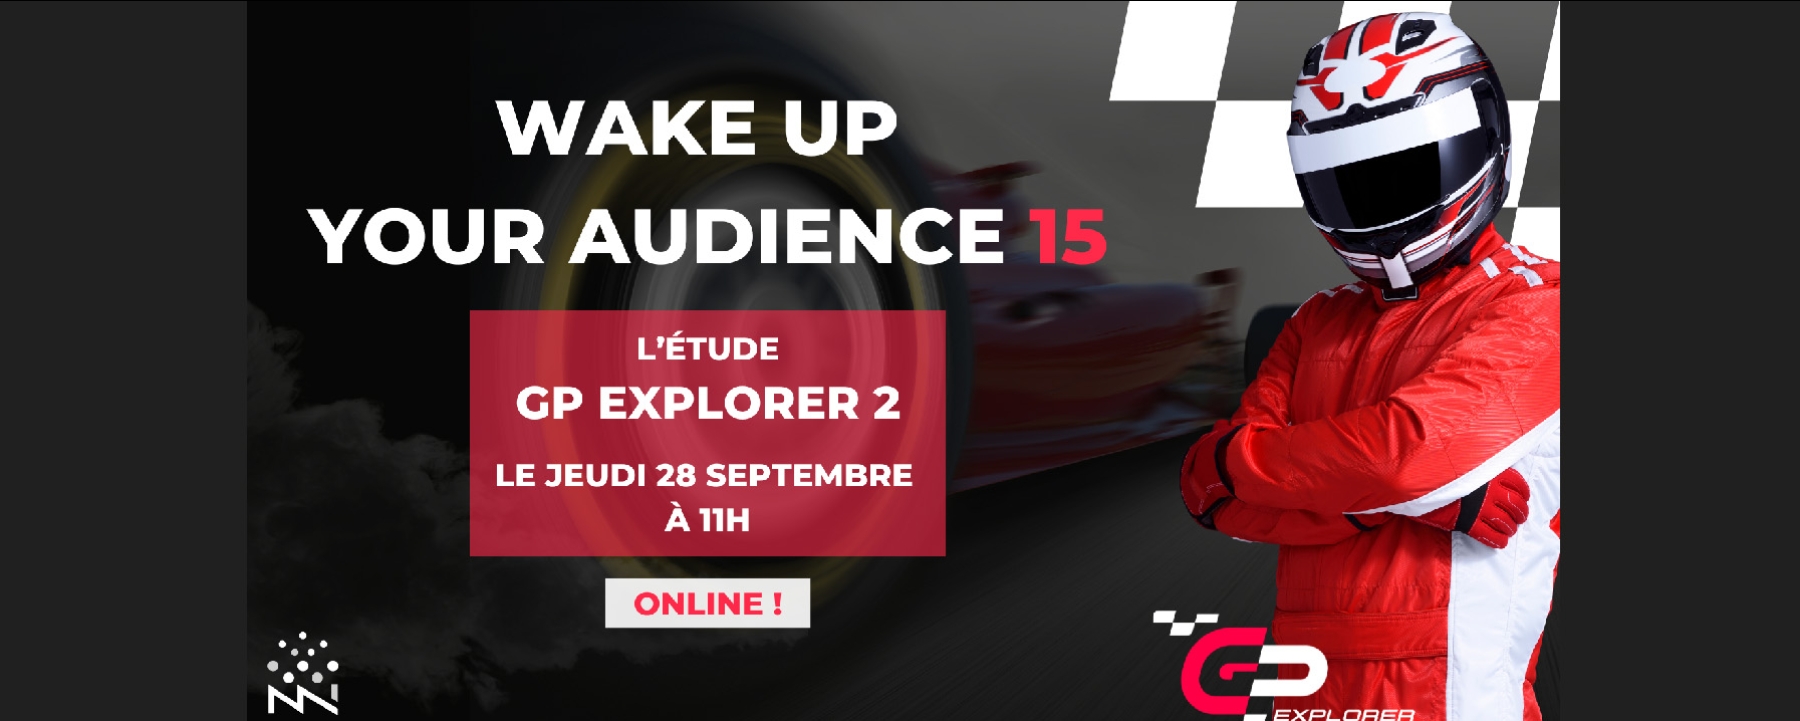 Wake Up Your Audience 15 : L'étude GP Explorer 2 !